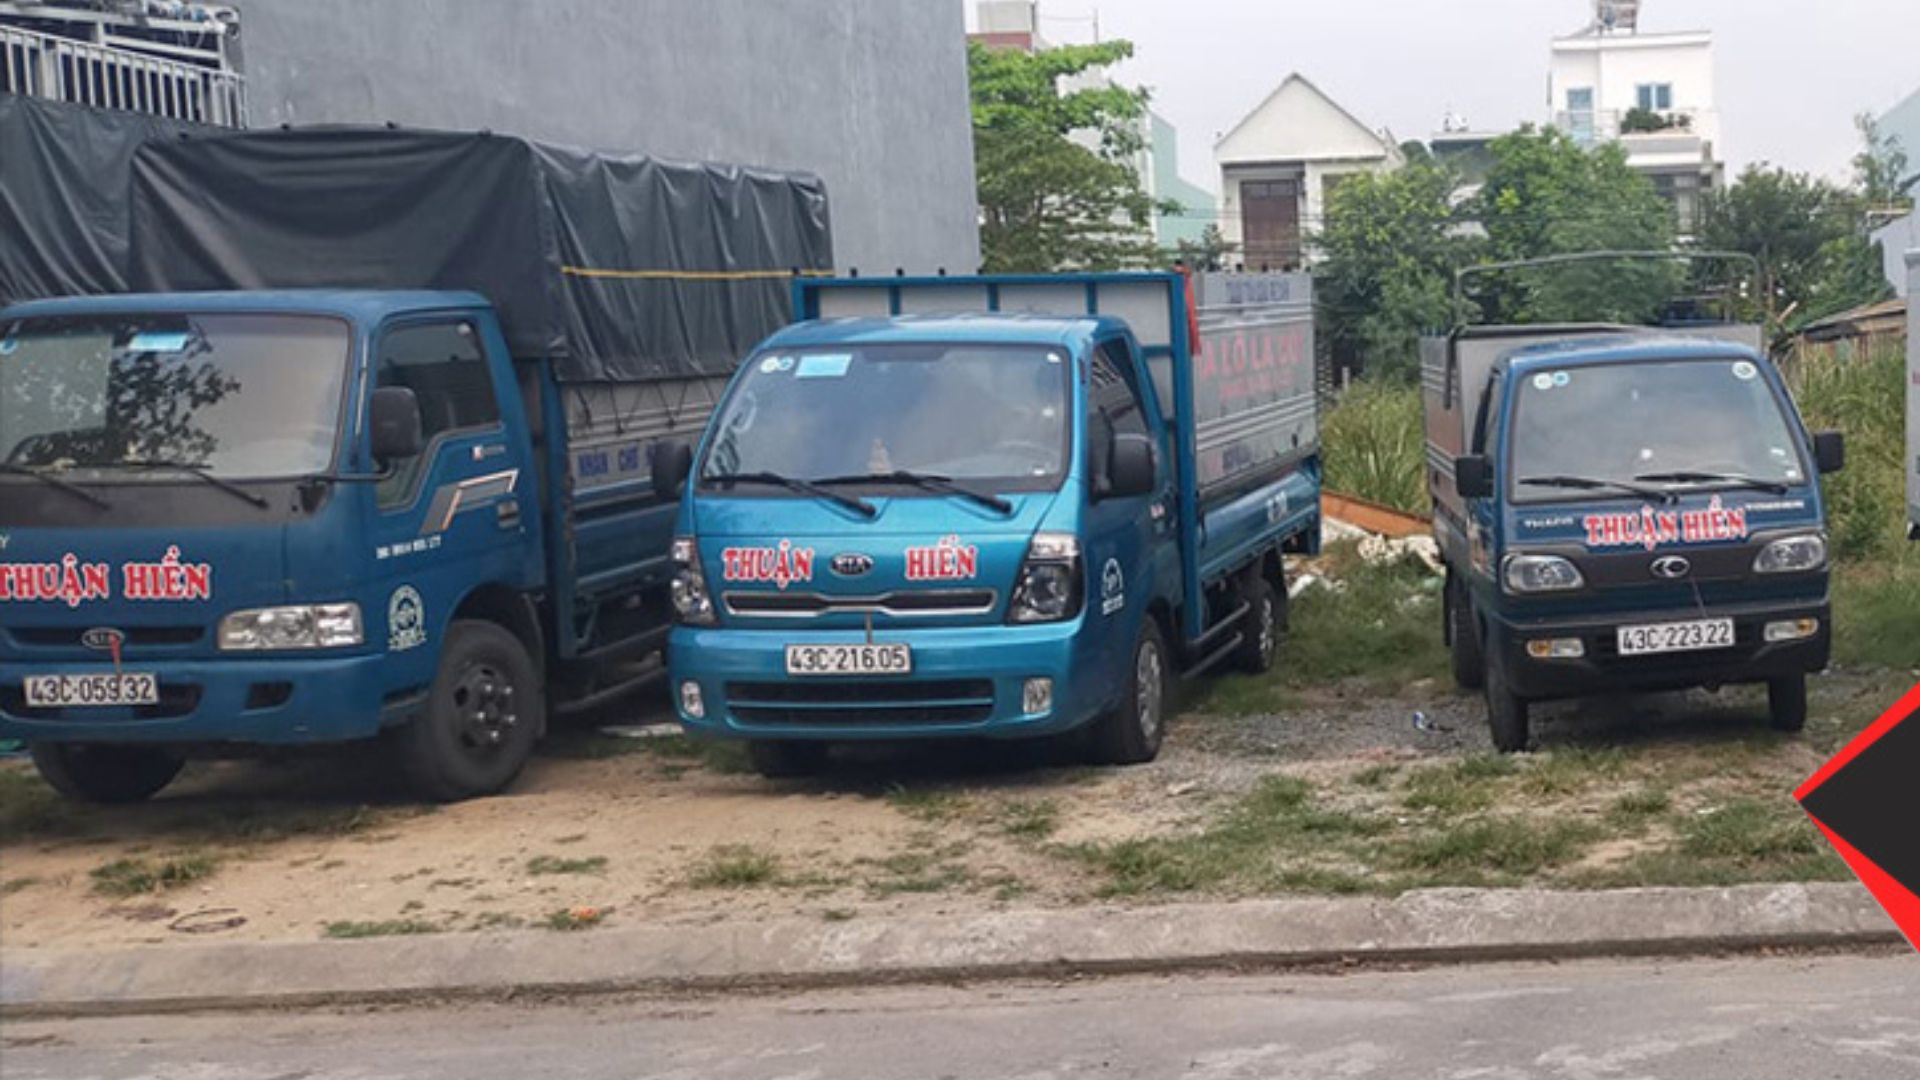 Dịch vụ Thuận Hiền- Đơn vị cung cấp dịch vụ chuyển trọ tại Đà Nẵng